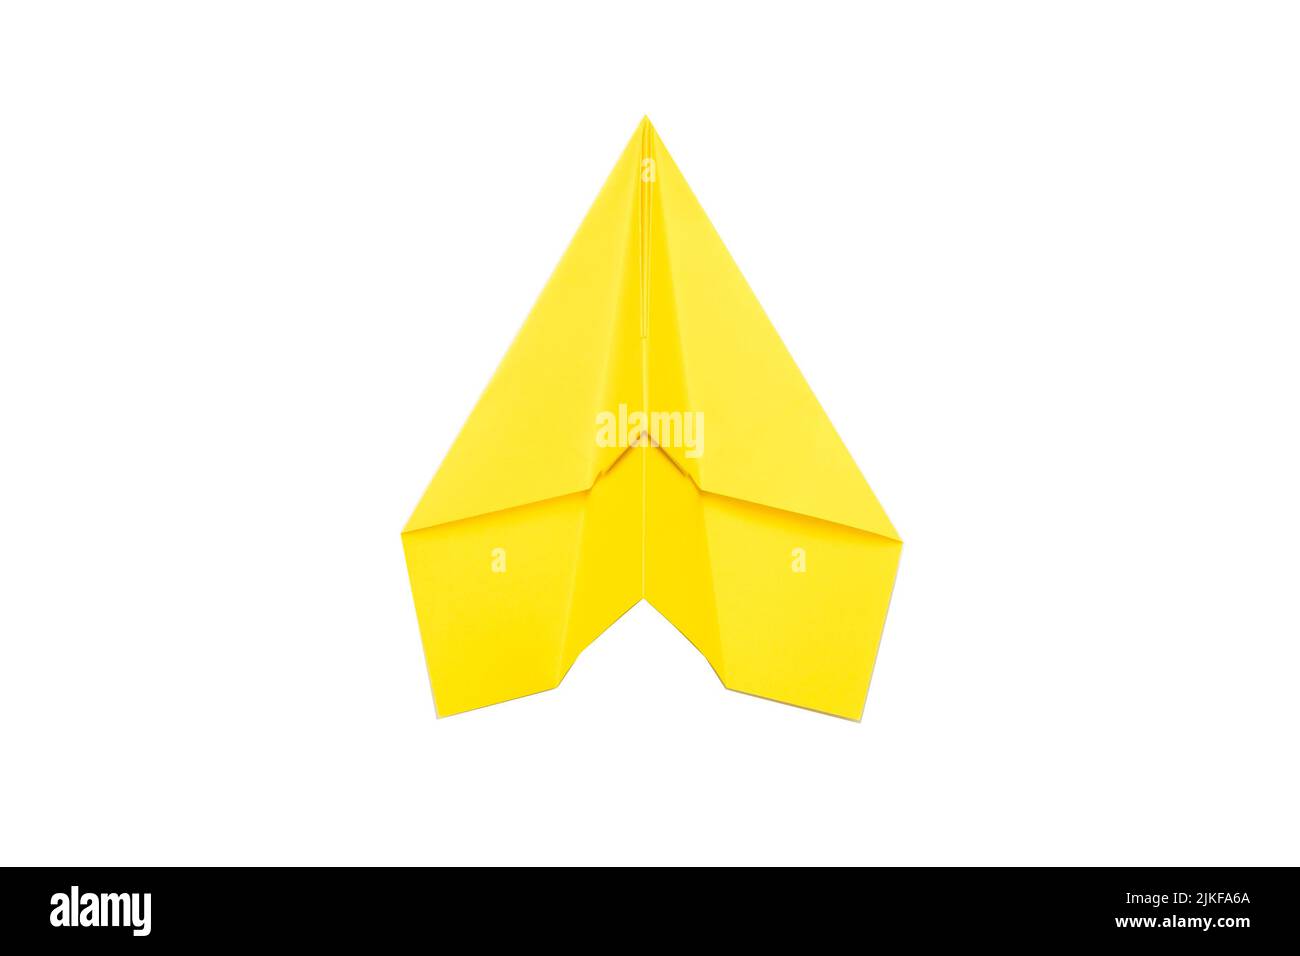 obiettivo di crescita personale aeroplano di carta gialla Foto Stock